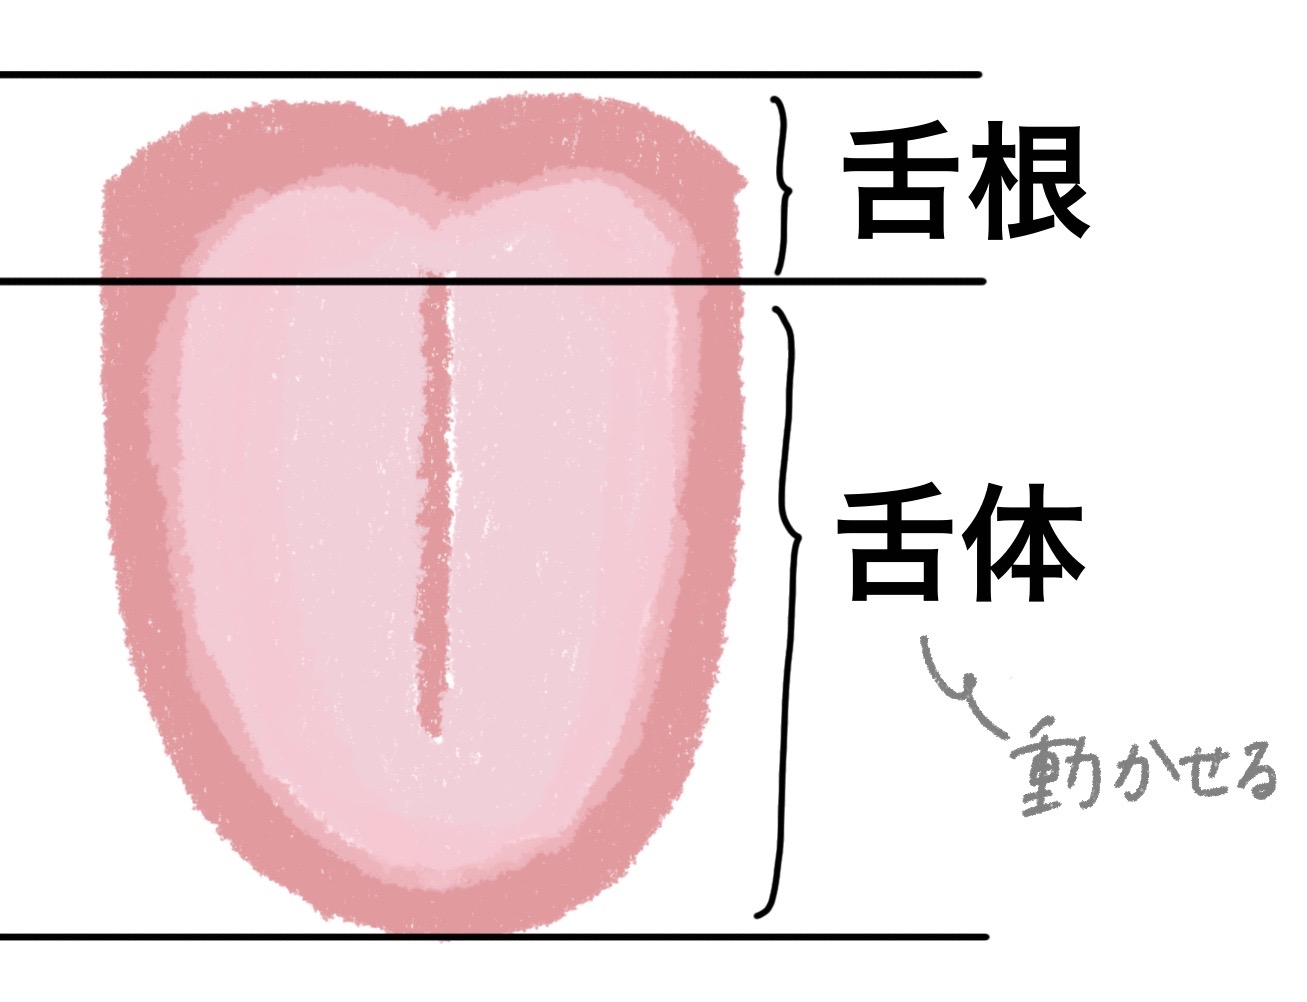 舌 の 偏 位 と は